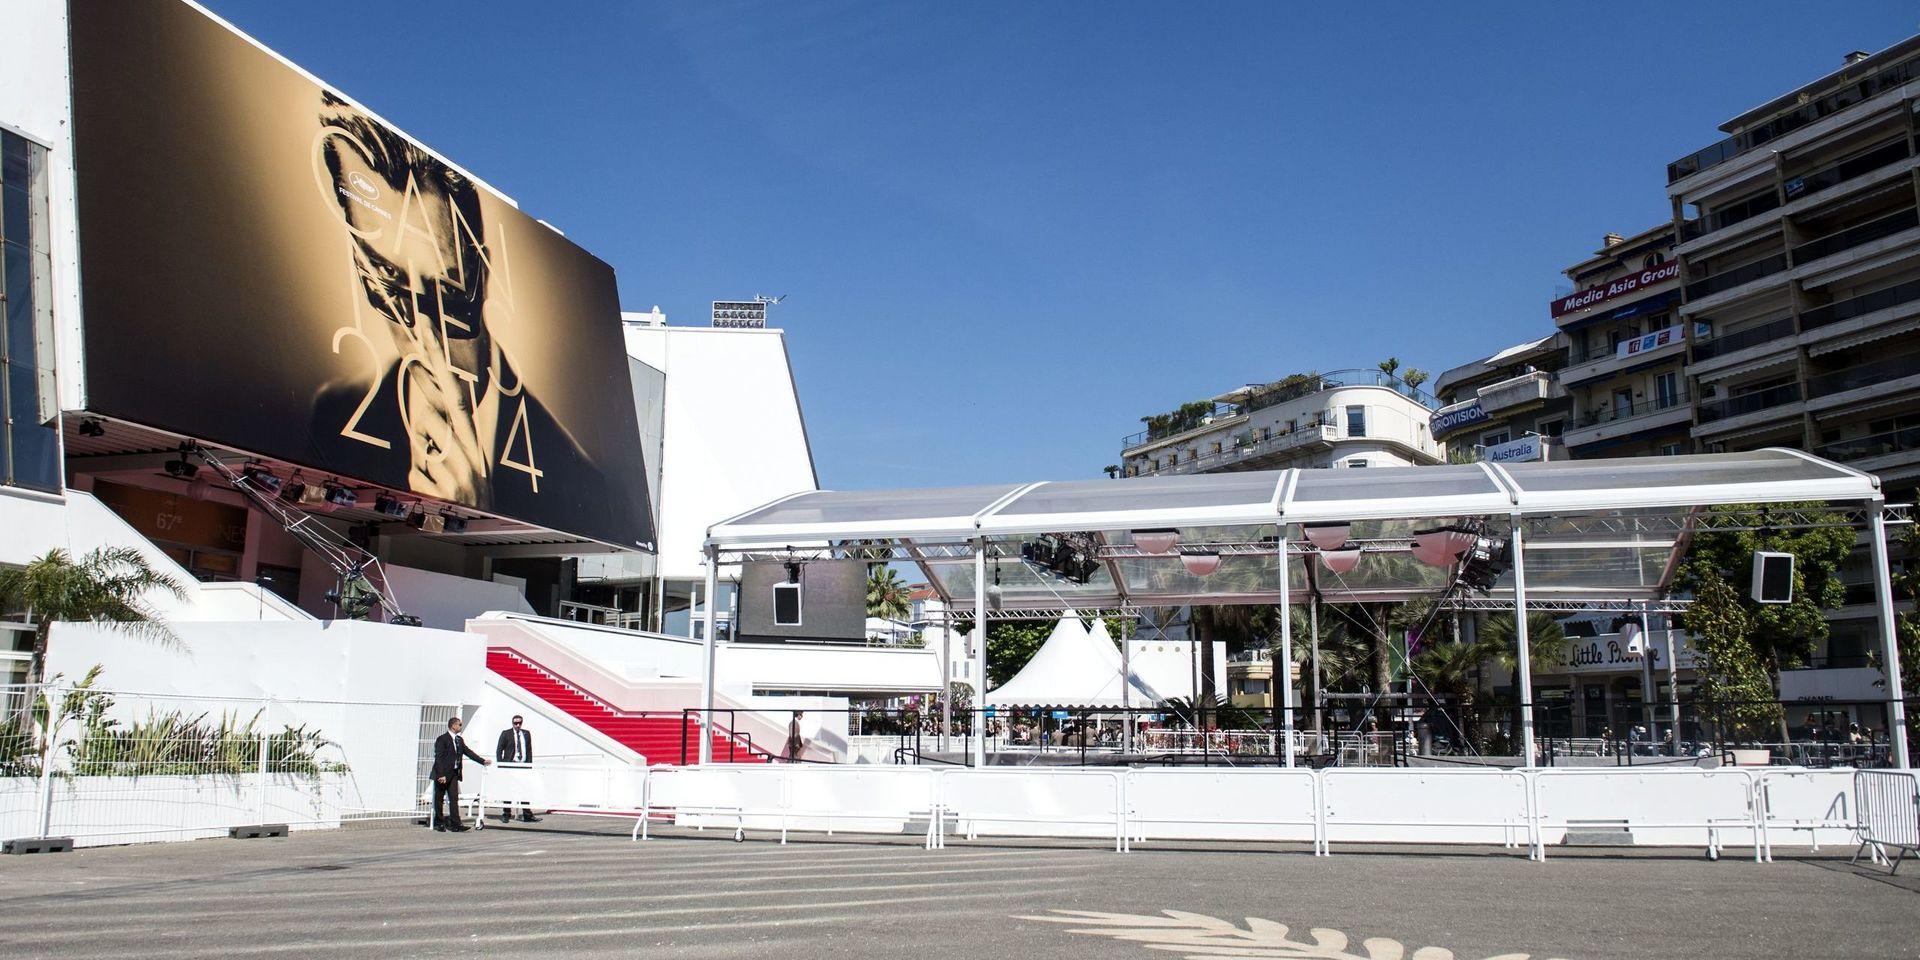 Den nu våldtäktsanklagade filmstjärnan har varit en ofta återkommande gäst på filmfestivalen i Cannes. Här är festivalpalatset där tävlingsfilmerna visas. 